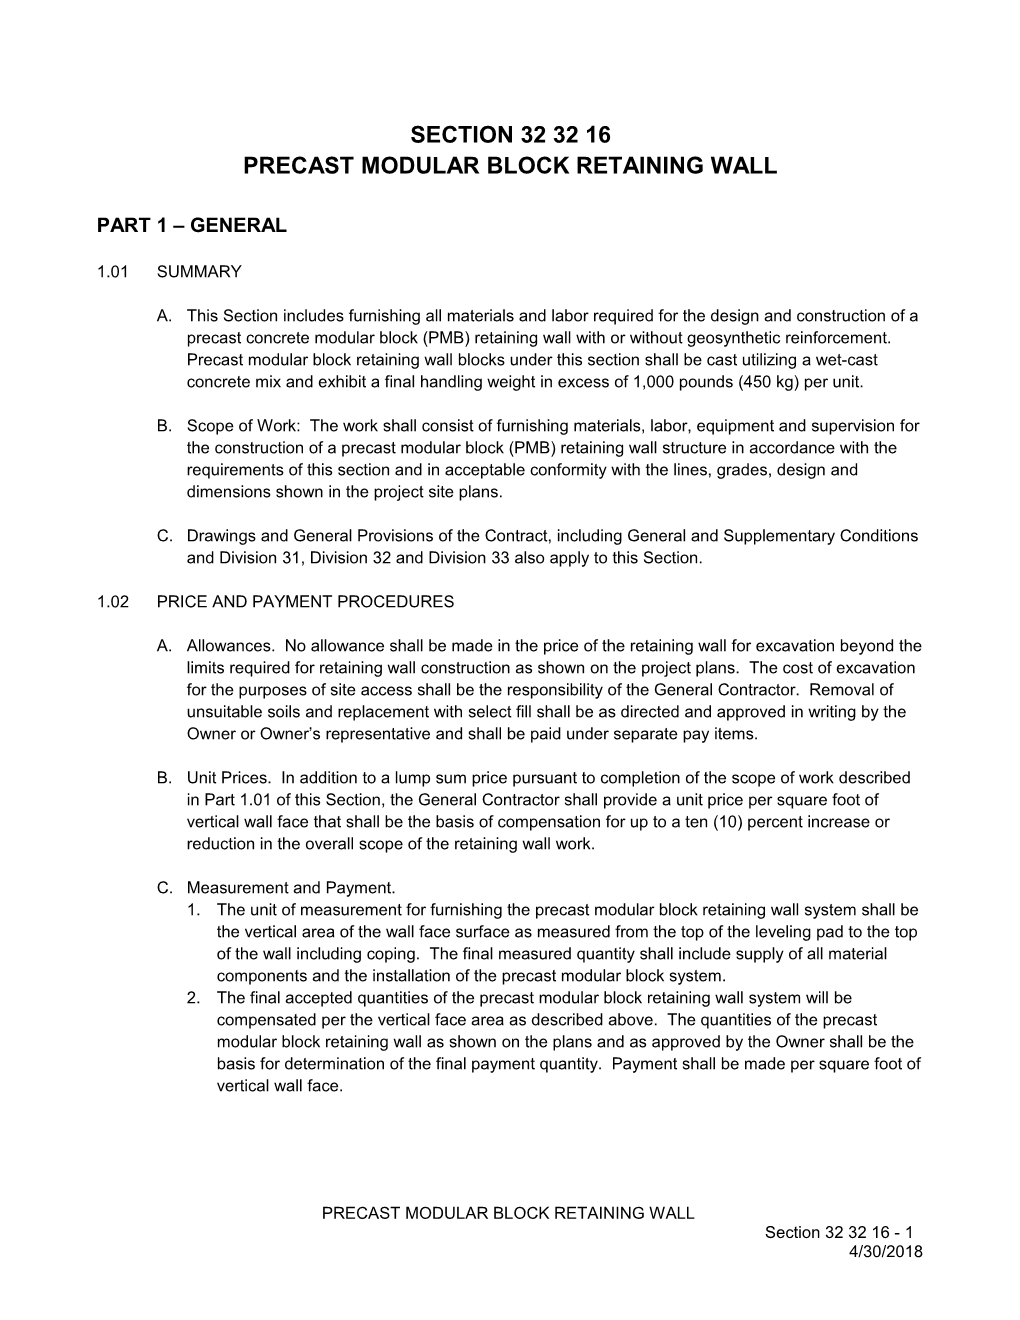 Precast Modular Block Retaining Wall Specification